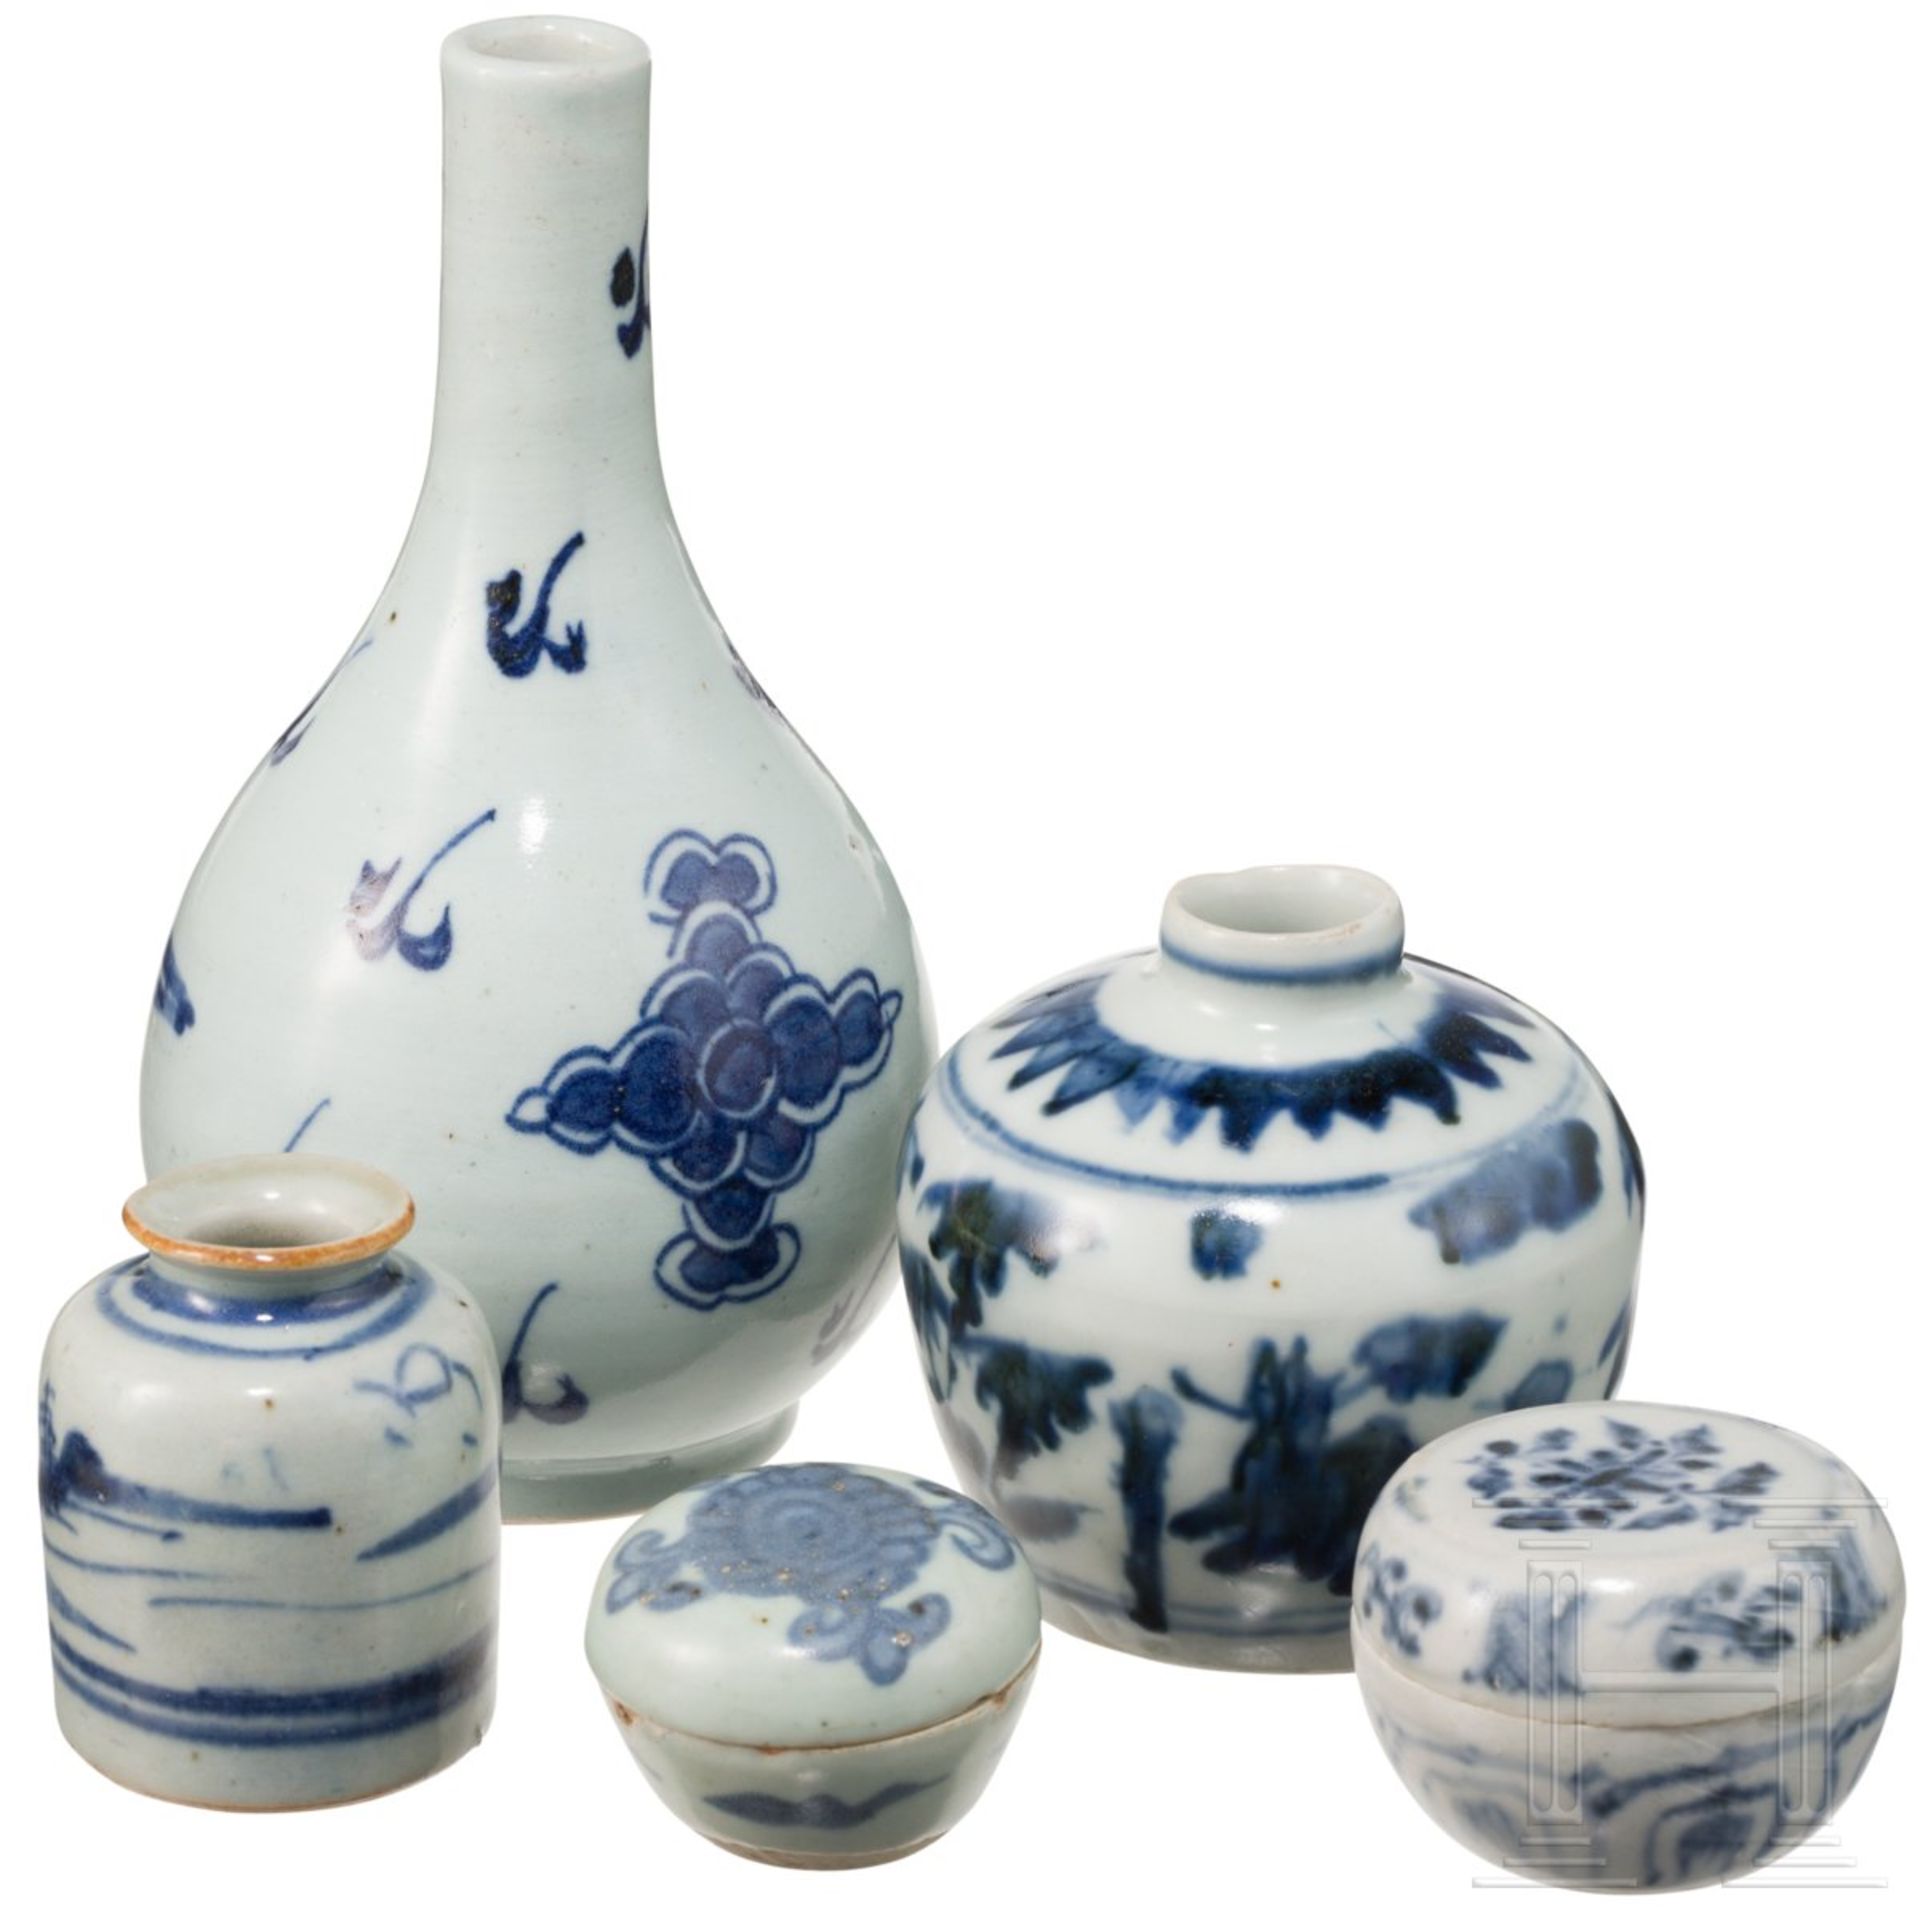 Drei kleine Vasen und zwei Döschen mit weiß-blauer Dekoration, China, 16. - 17. Jhdt. - Image 2 of 3